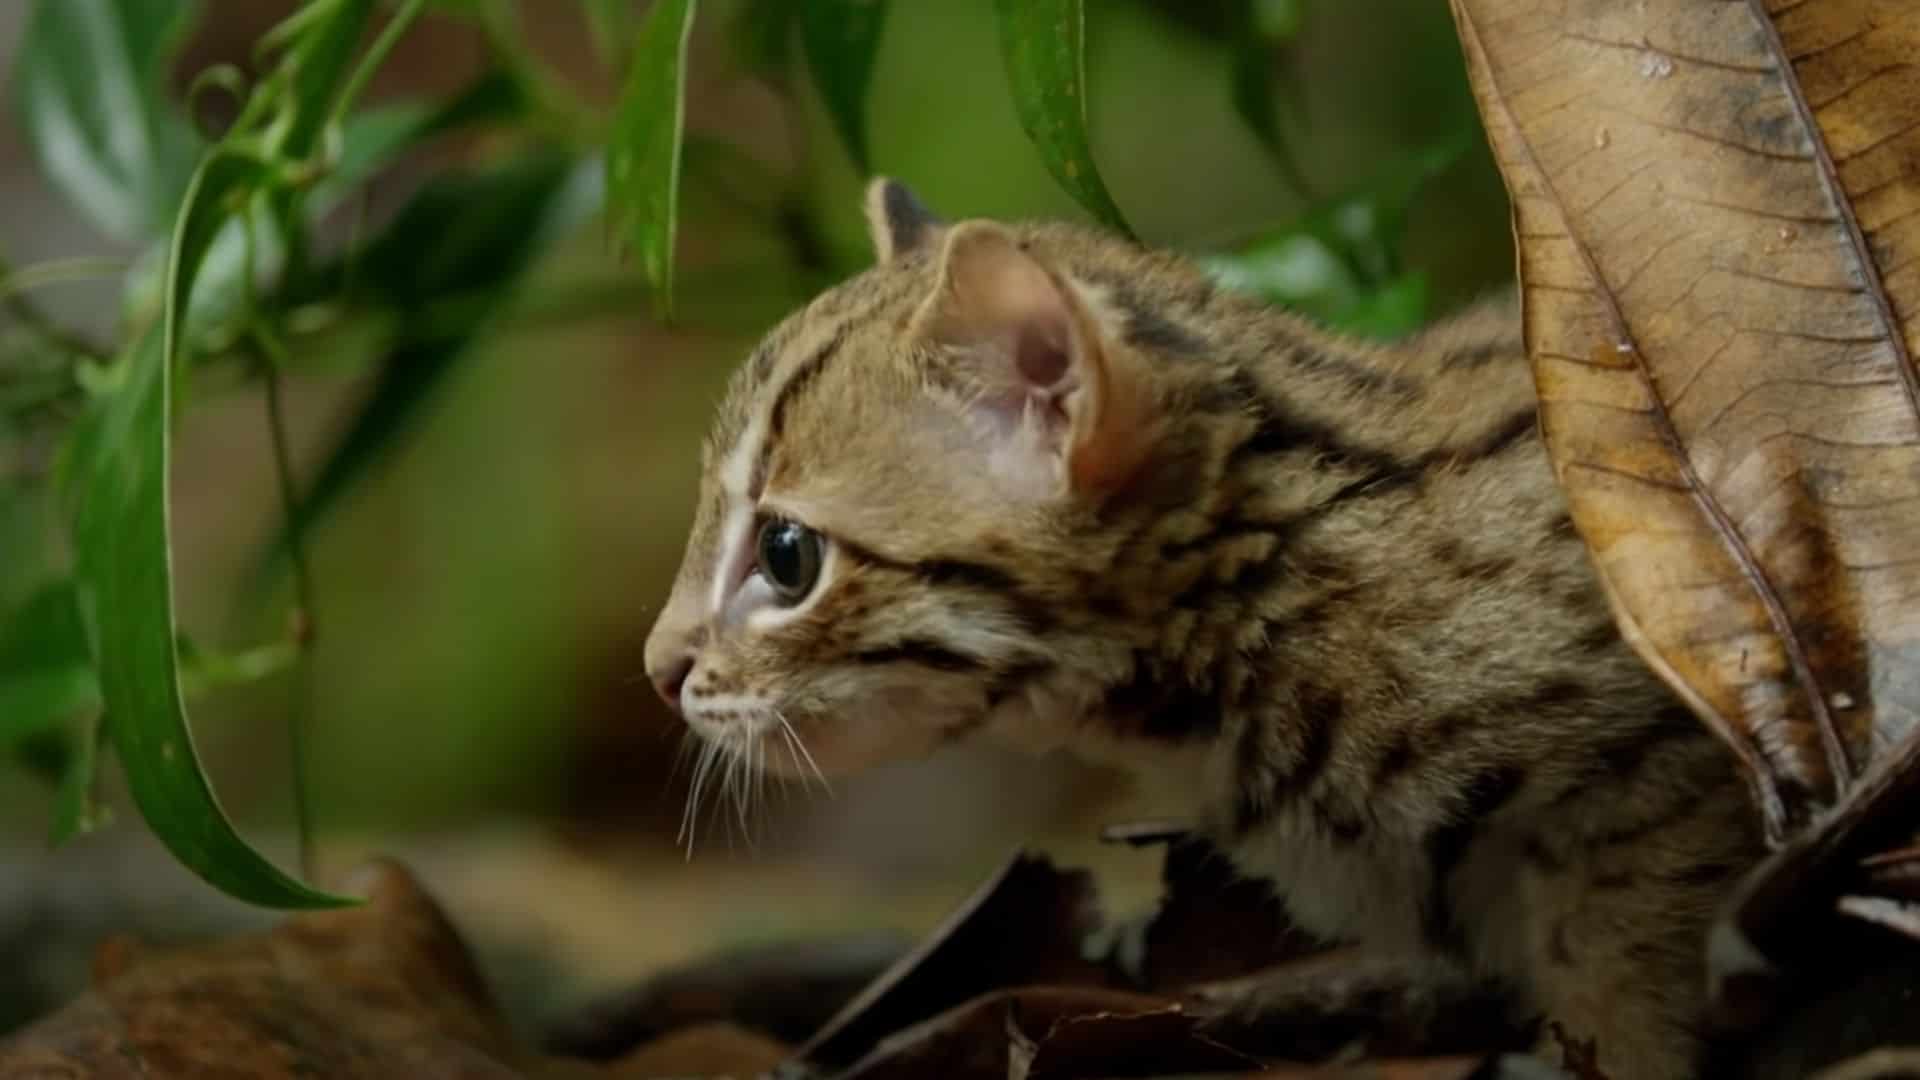 Tiniest kitten in world